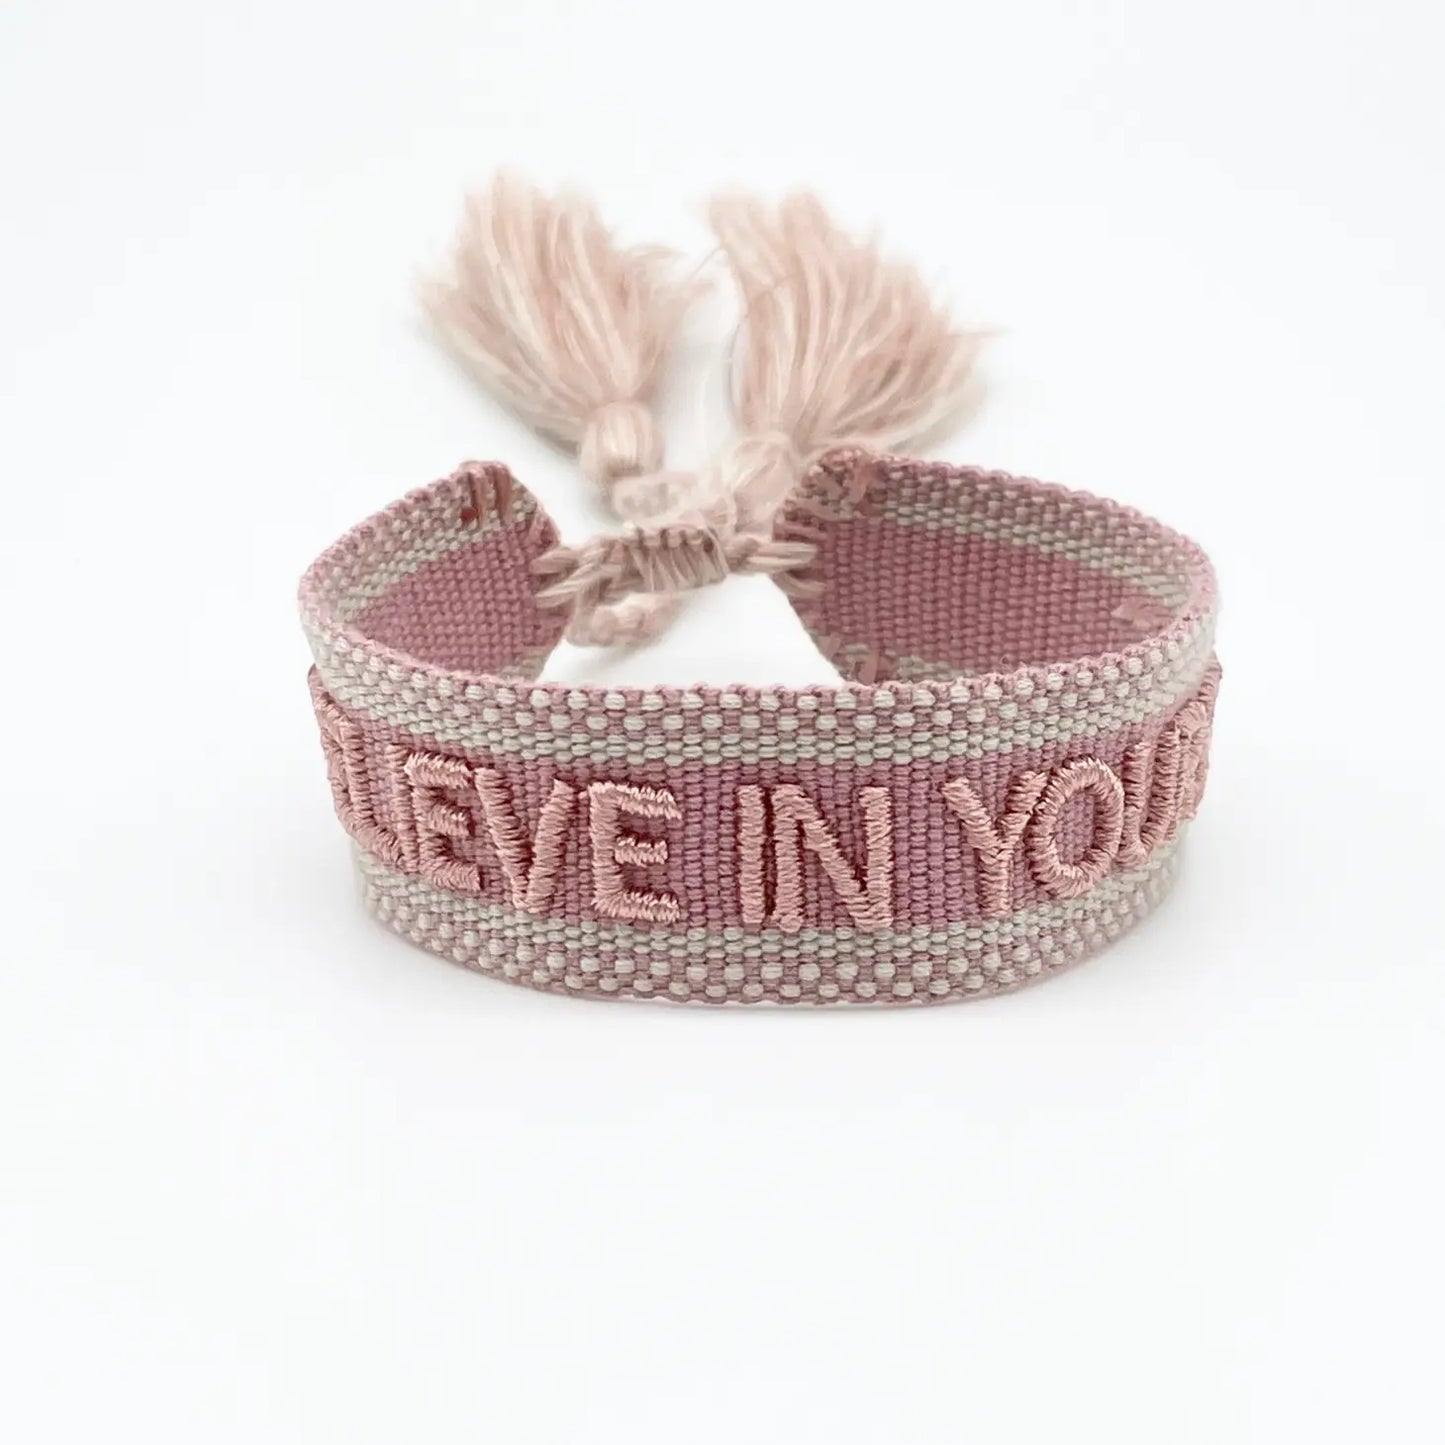 Believe in Yourself Woven Bracelet